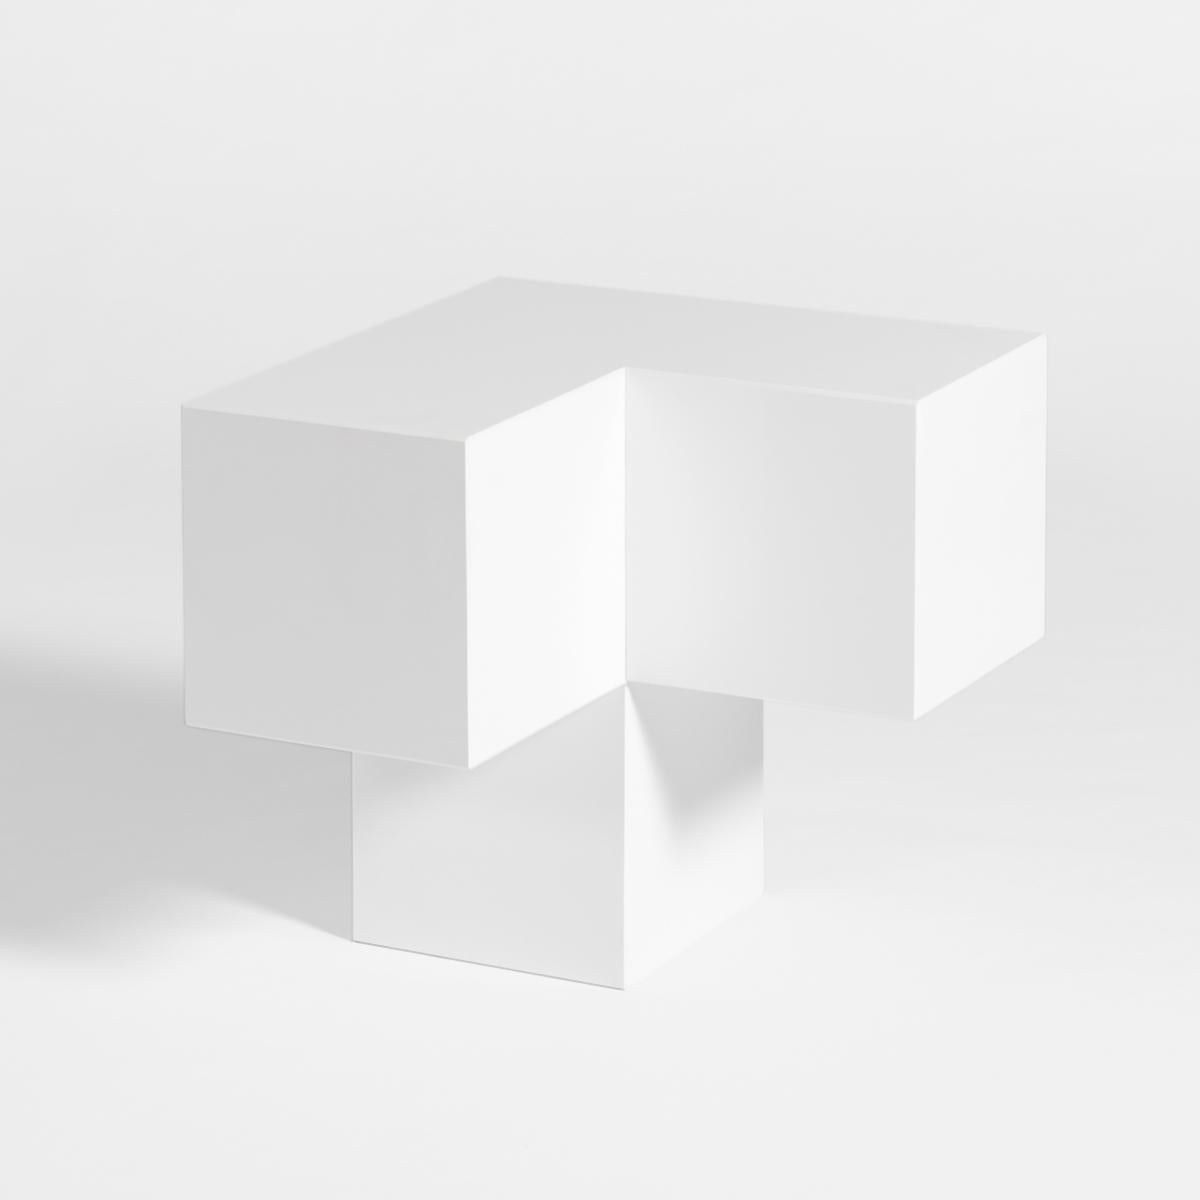 Voxel L - Table basse et table d'appoint en pierre de quartz du 21e siècle, blanc neige

En infographie, un voxel représente une valeur dans une grille régulière d'un espace tridimensionnel. Du particulier au tout, on part d'une unité qui se